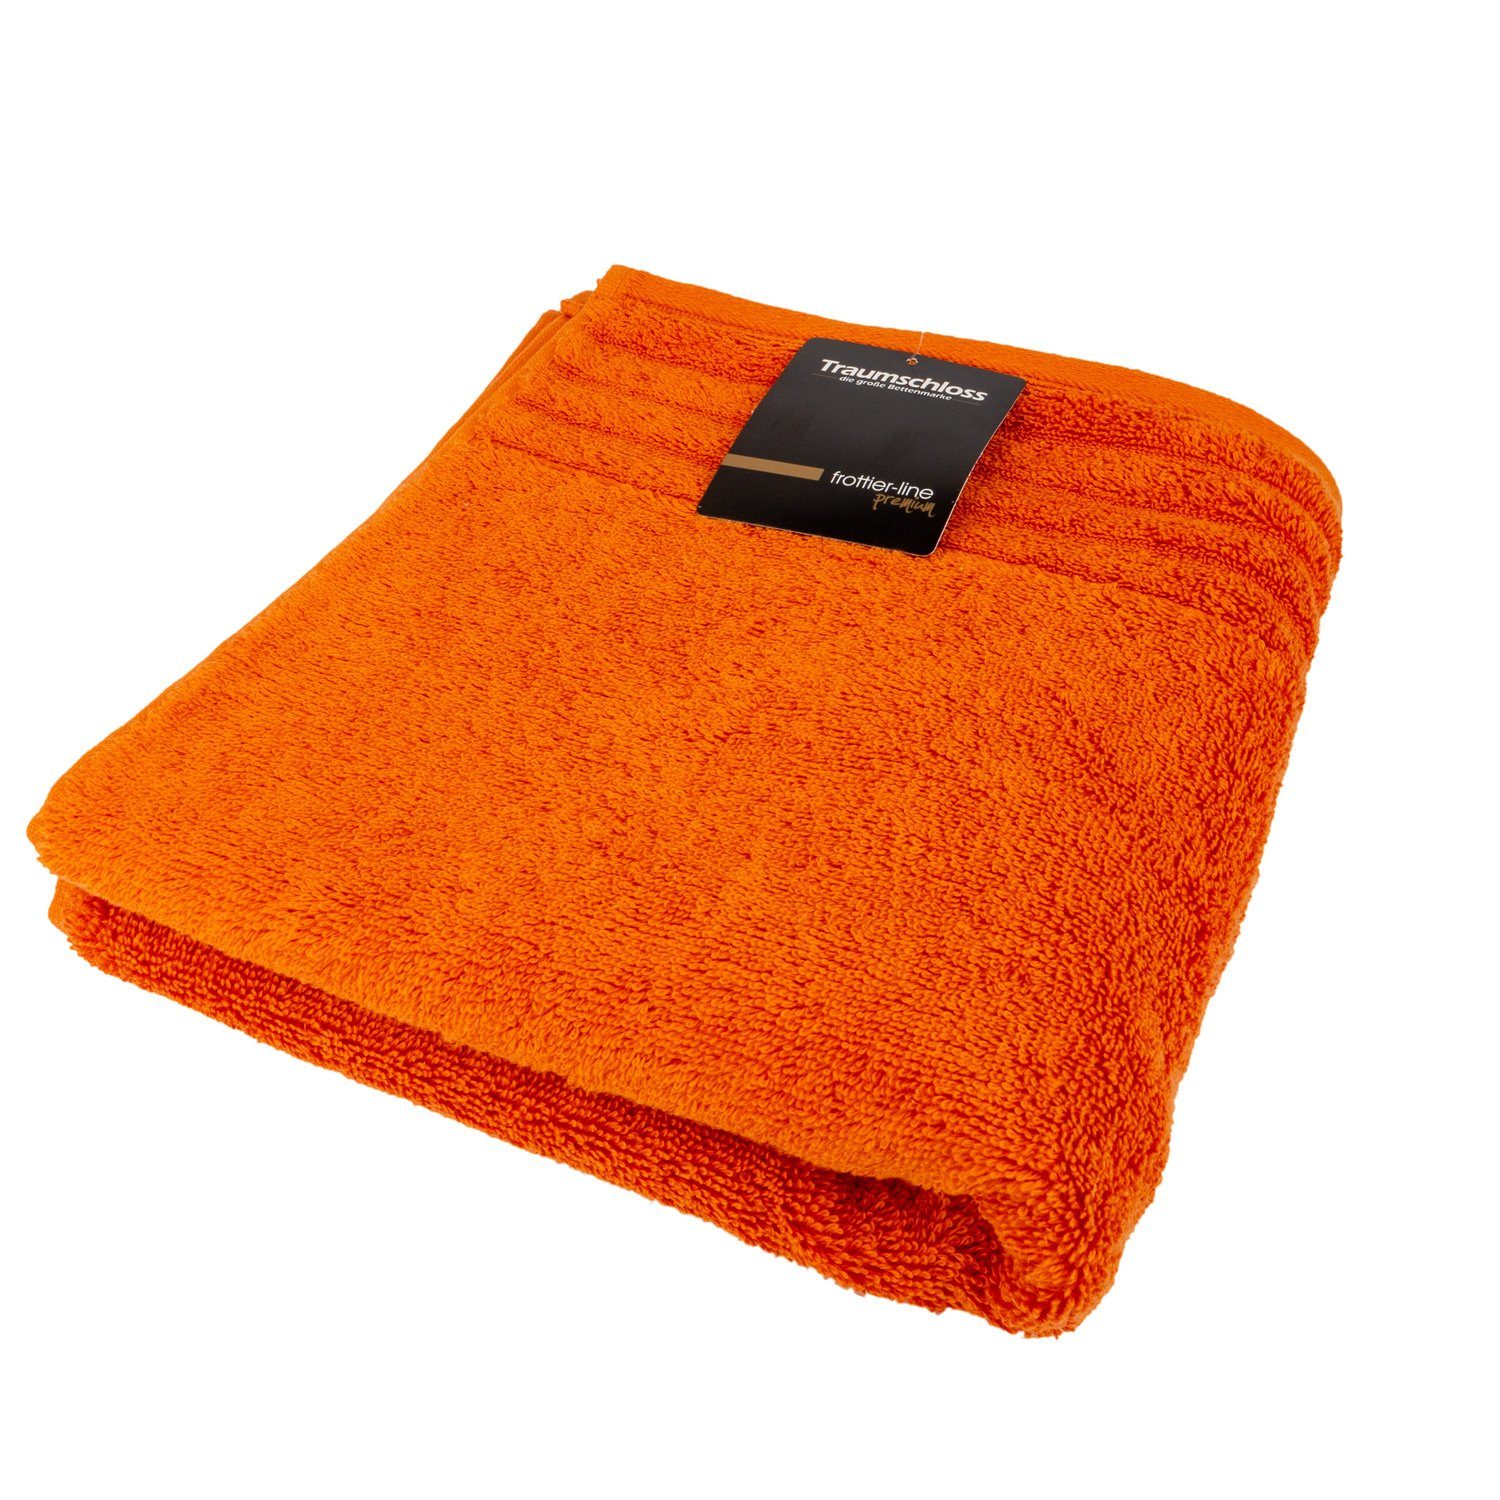 Traumschloss amerikanische orange Frottier mit 600g/m² Baumwolle Premium-Line, Supima Gästehandtuch (1-St), 100%